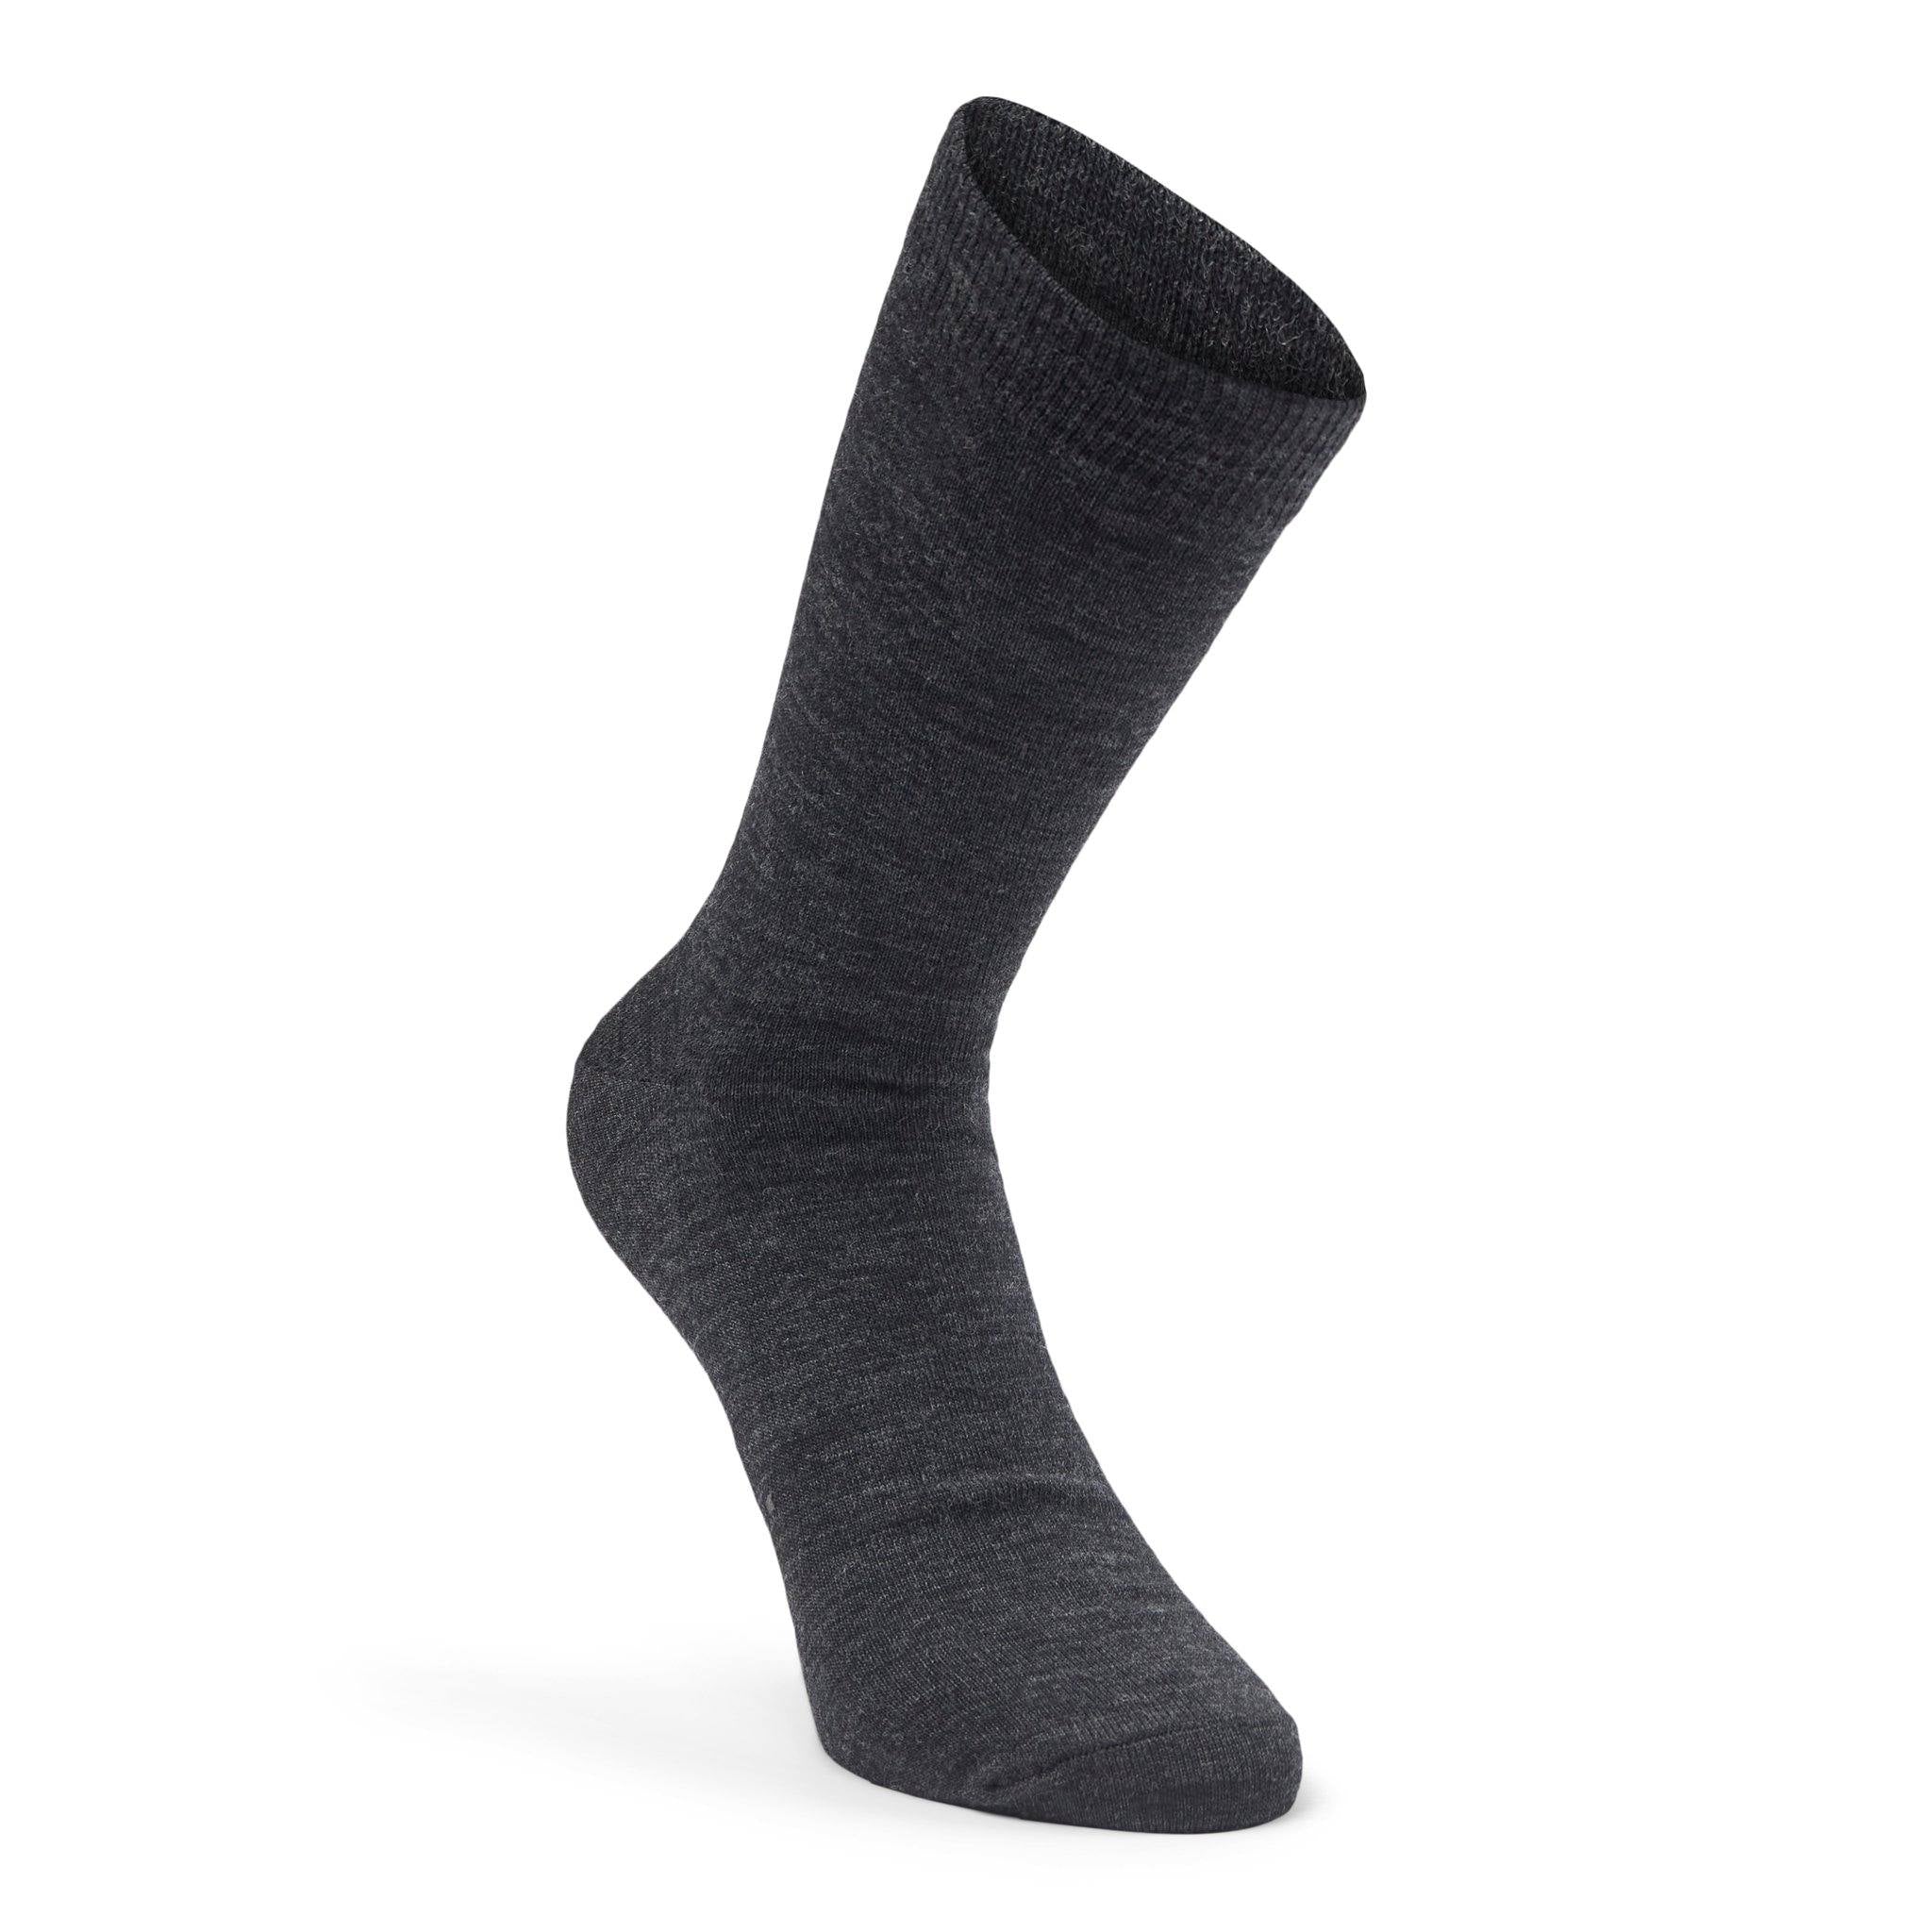 Mørkegrå sokker eller strømper til den kvalitetsbevidste mand